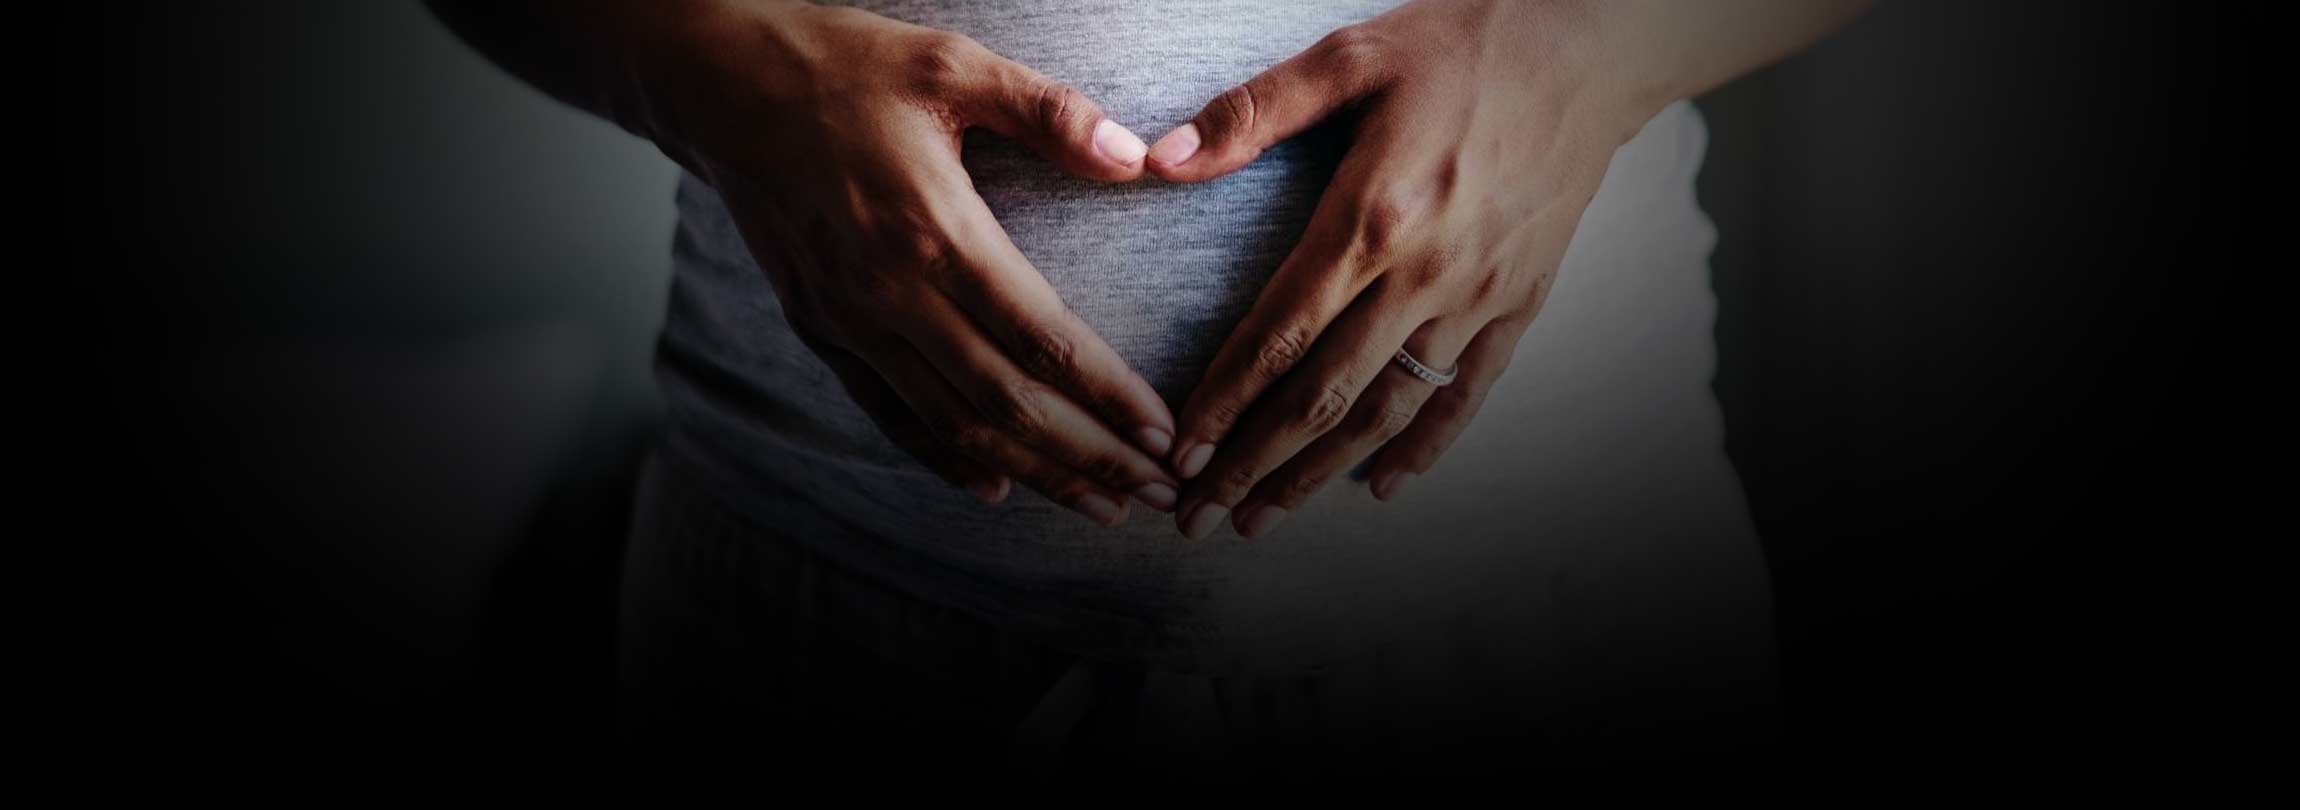 Aborto e contracepção, dois “frutos da mesma planta”